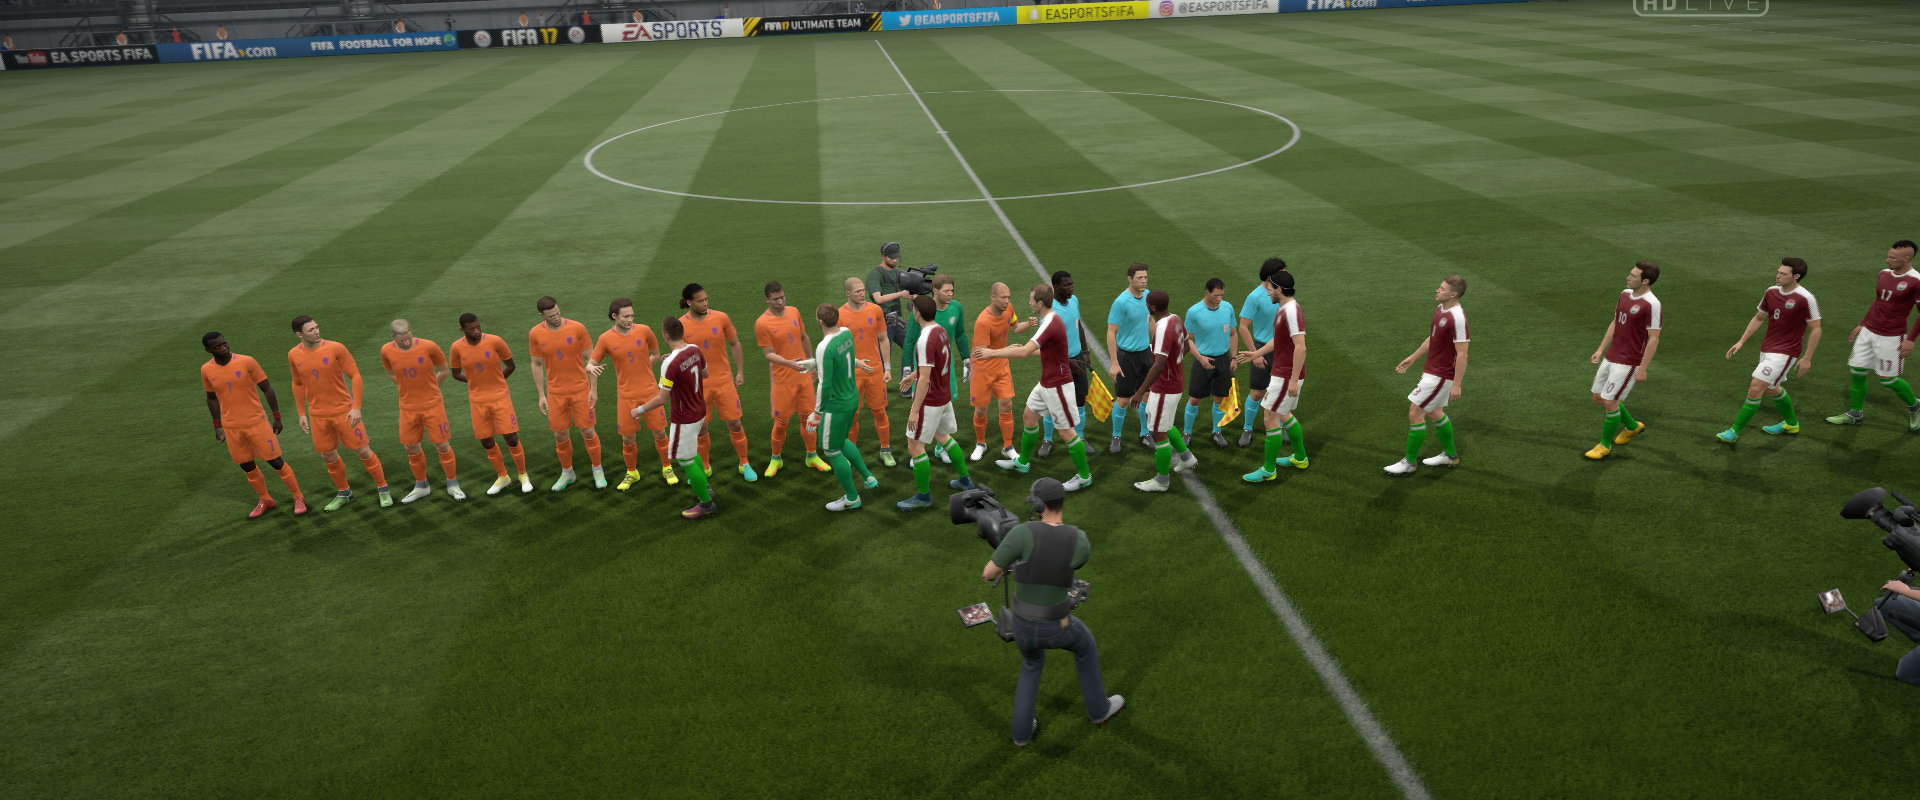 FIFA17 U21 VB: A következő fordulóban Hollandia és Törökország ellen bizonyíthatunk